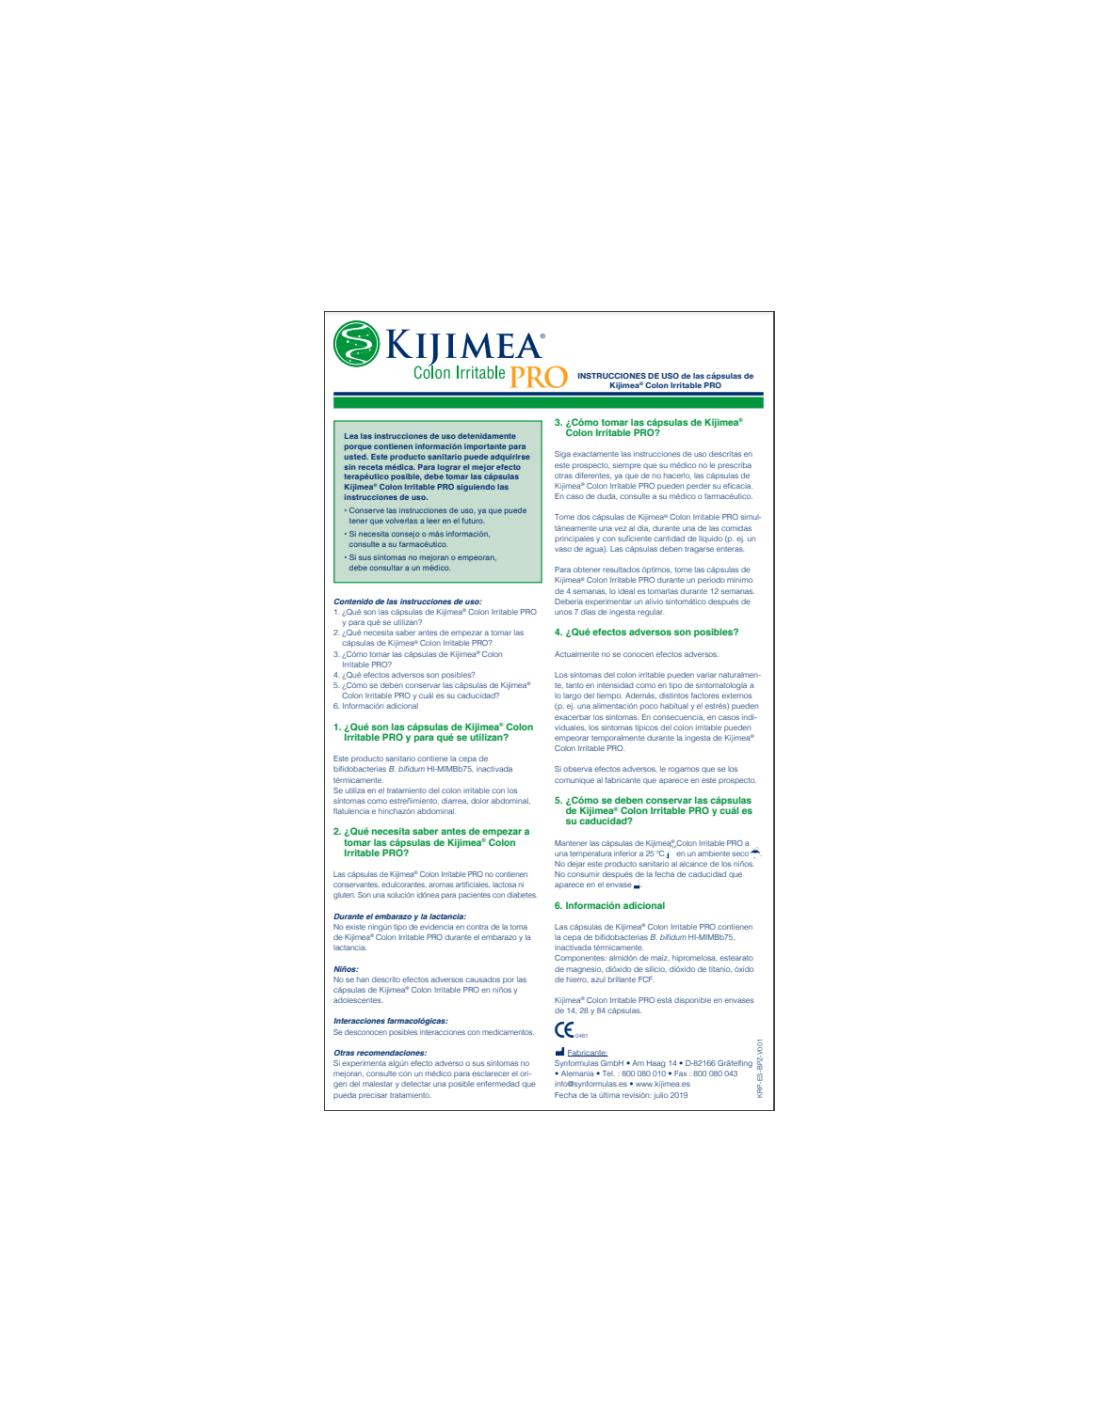 Kijimea Pro: Cómo tomar, Ingrediente activo 